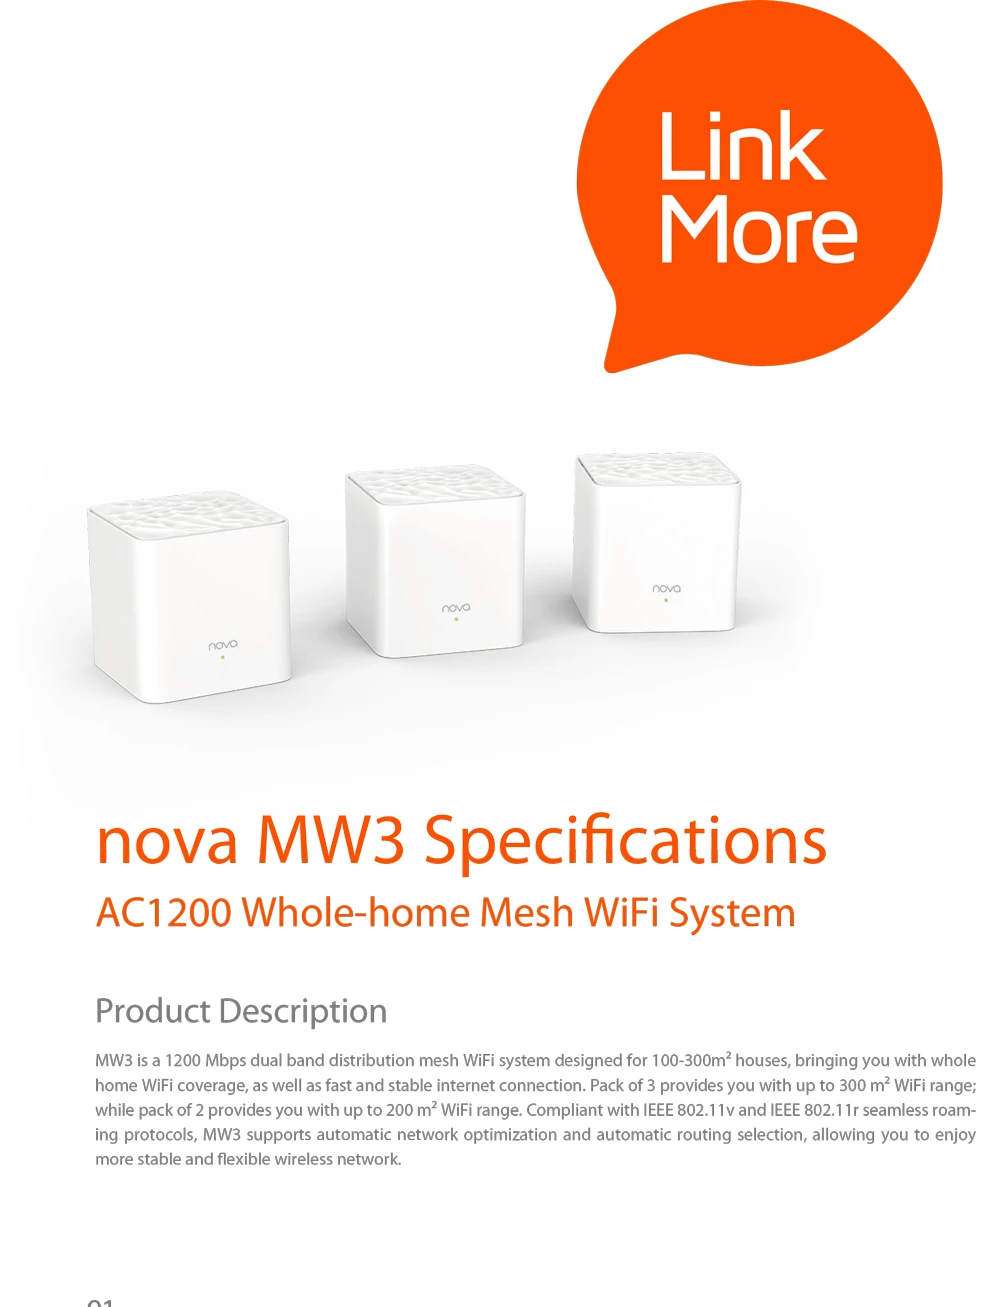 Tenda Nova MW3 весь дом сетки гигабитный Wi-Fi Системы с AC1200 2,4G/5,0 ГГц Wi-Fi Беспроводной маршрутизатор Easy комплект, приложение дистанционное управление